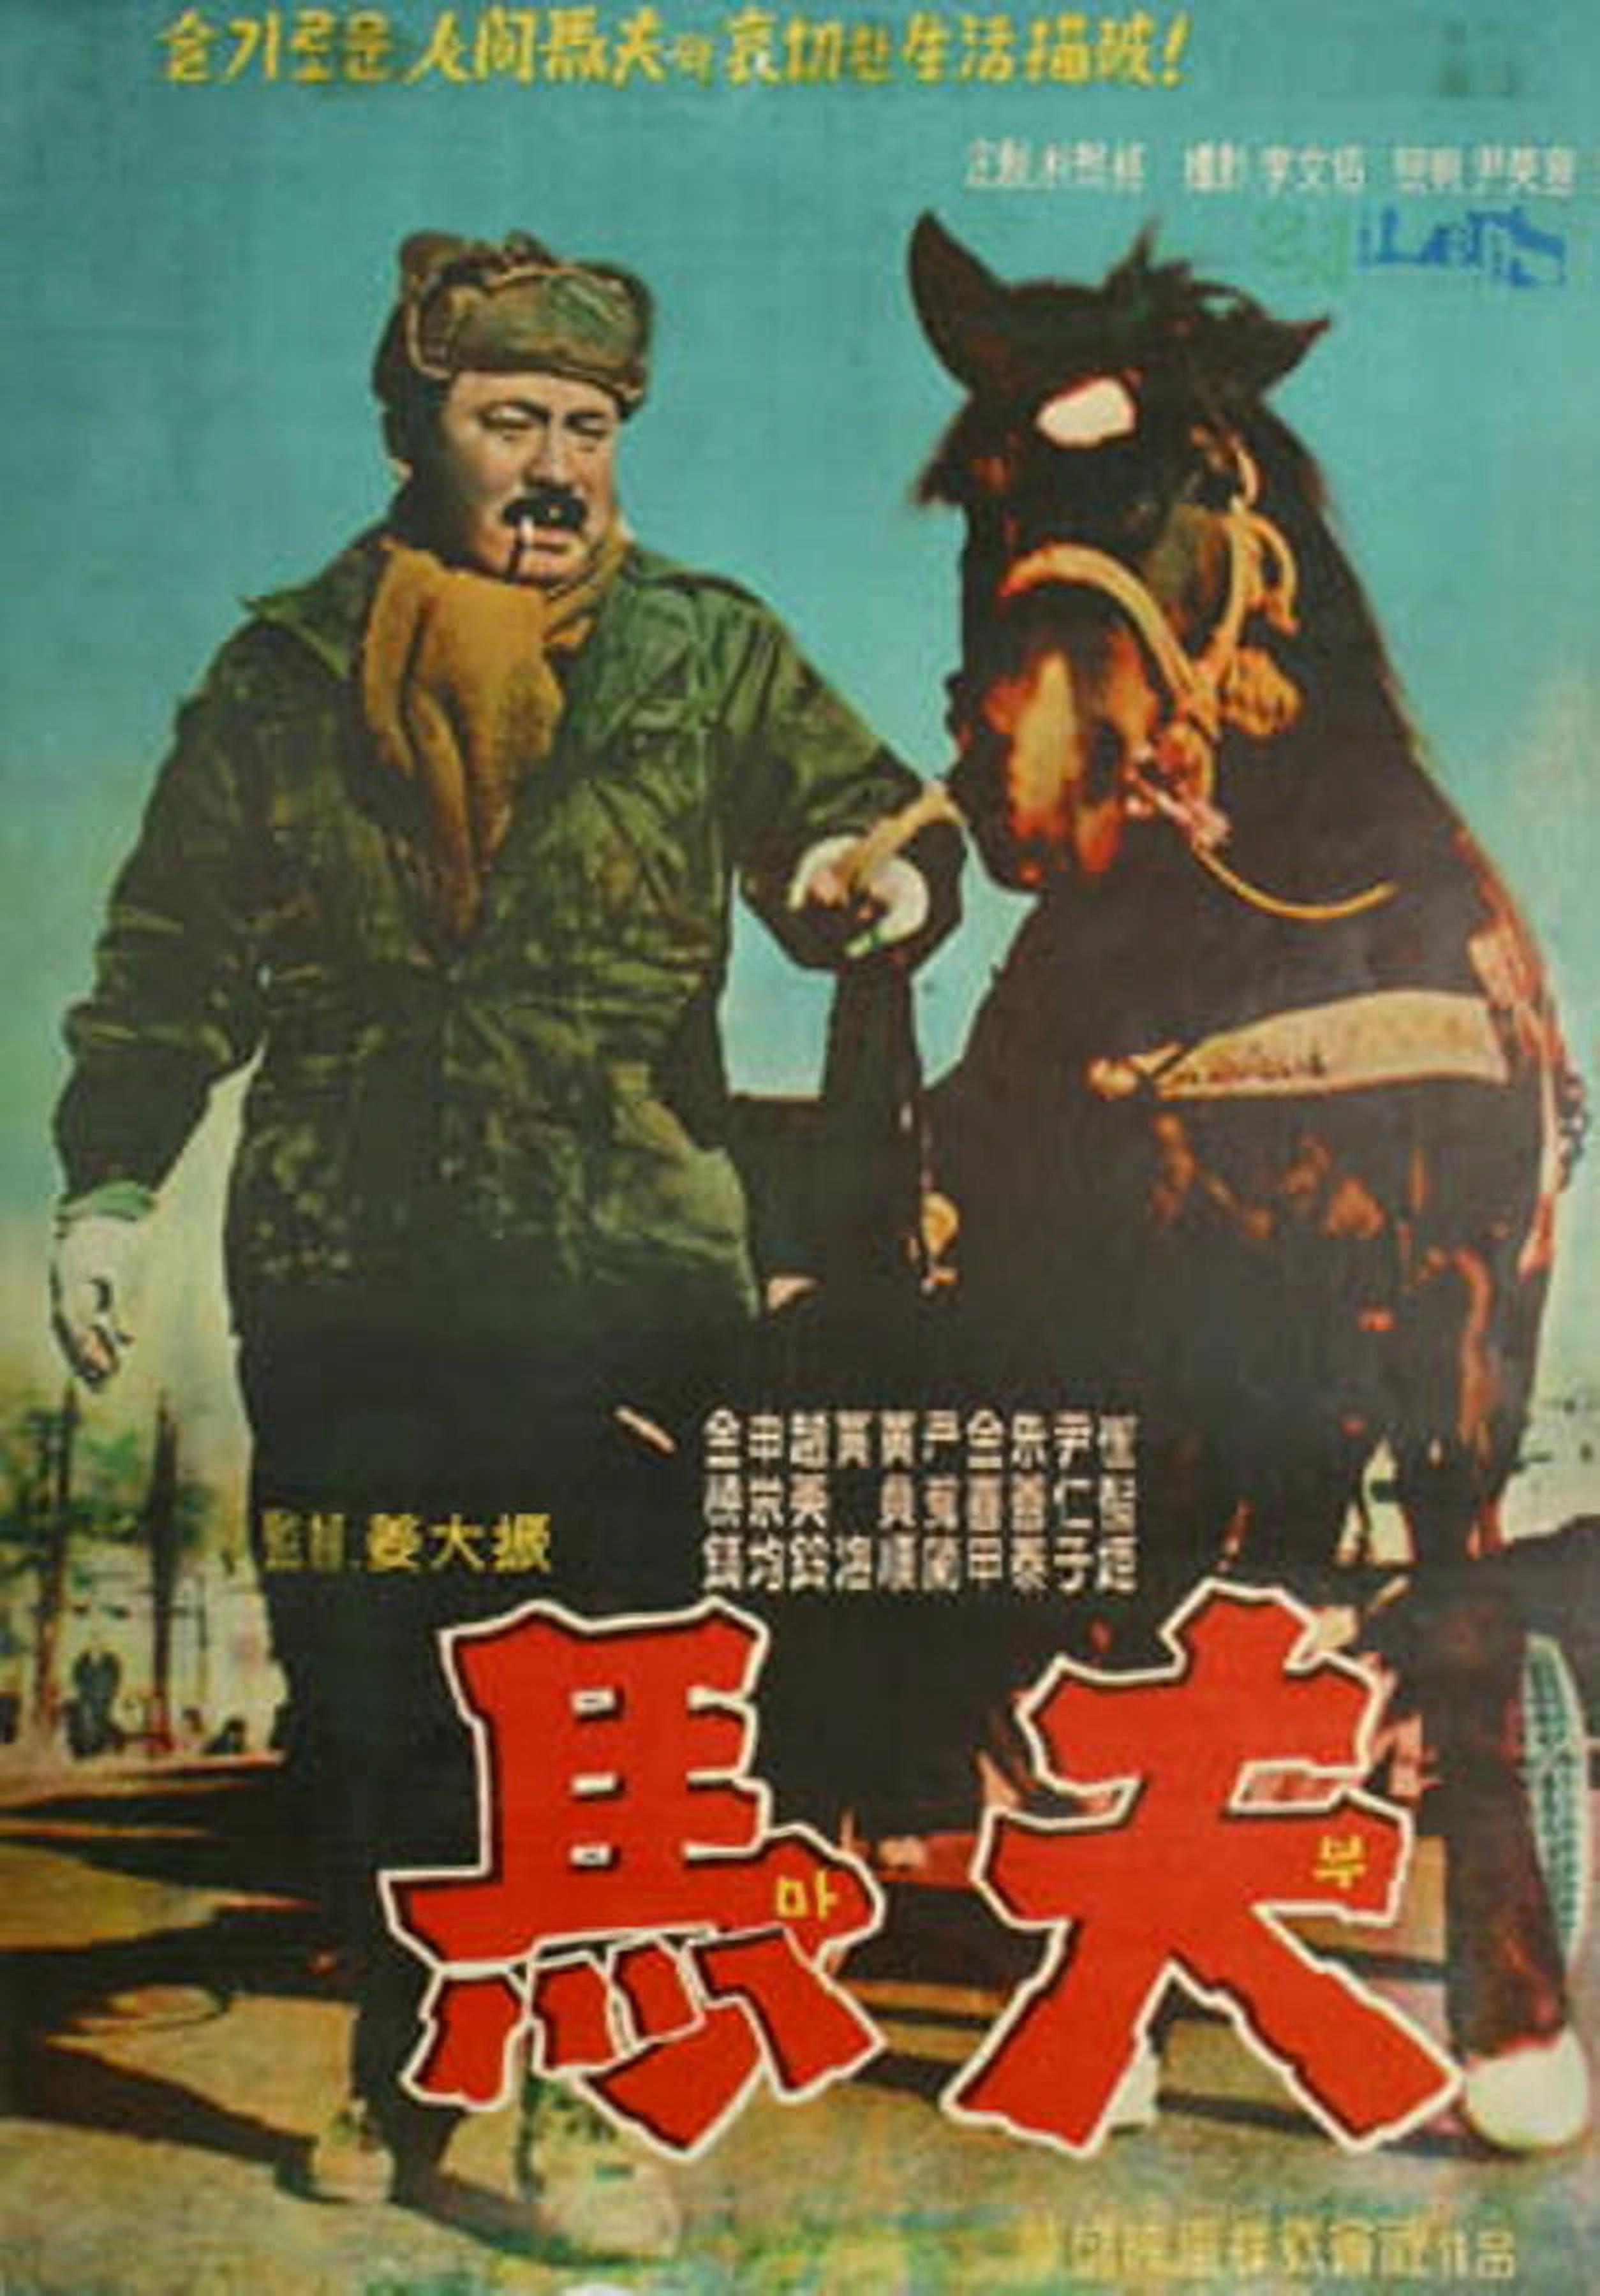 【1960-1970】《马夫》（1961）导演姜大振。优秀的韩国新现实主义作品，曾经入围第11届柏林国际电影节竞赛单元，最终捧获评审团大奖。